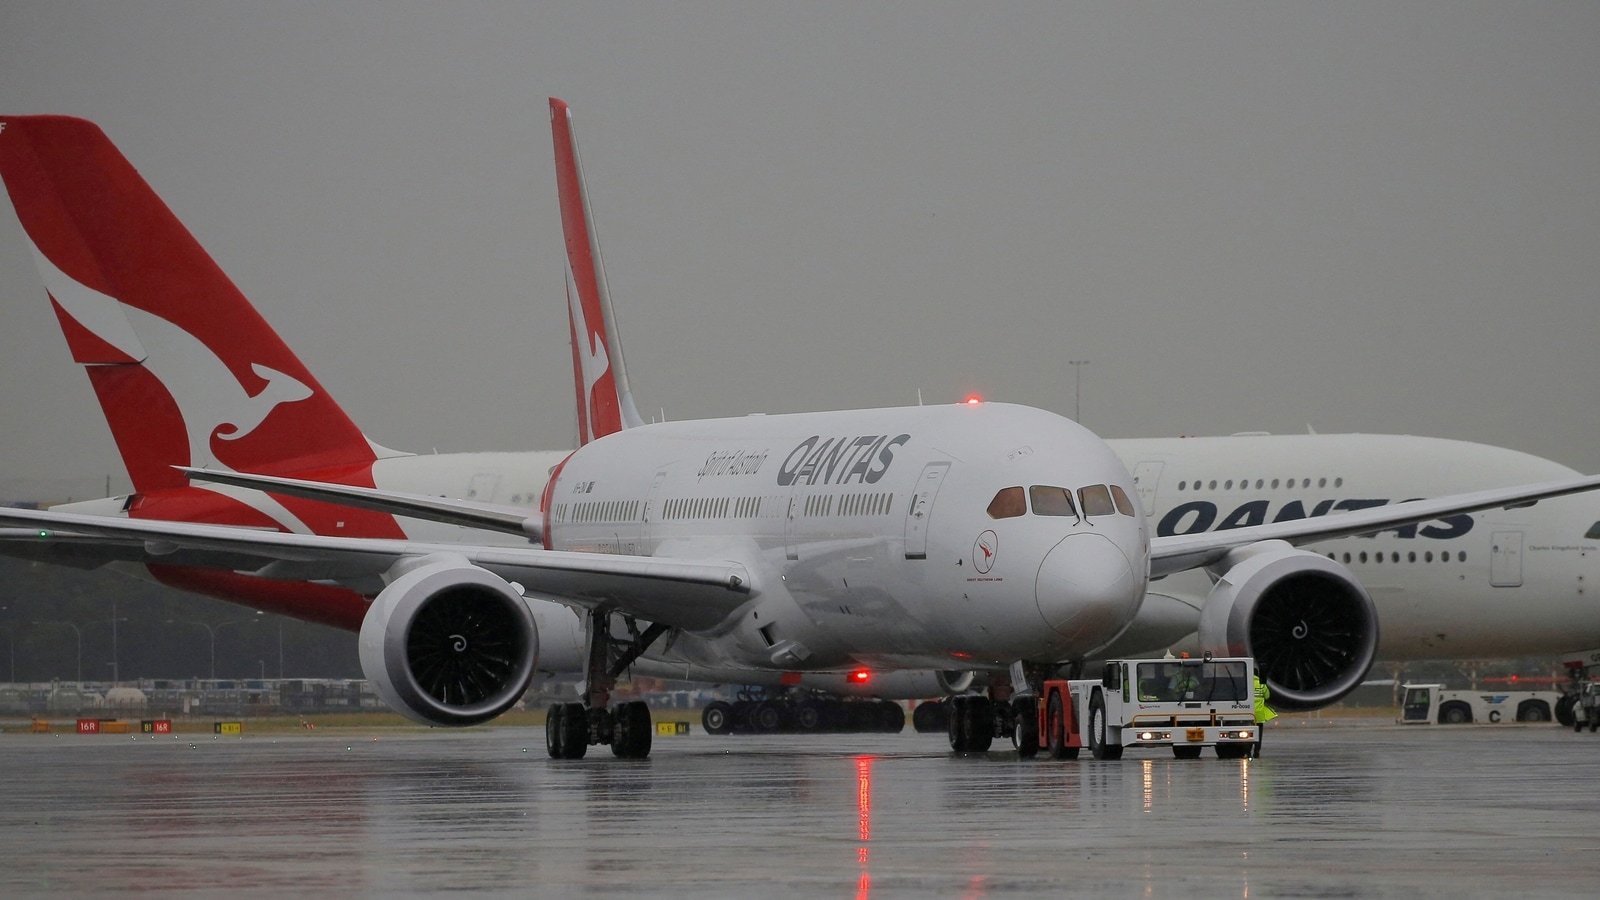 Pesawat Qantas mendarat dengan selamat di bandara Sydney setelah mengeluarkan panggilan darurat |  berita Dunia